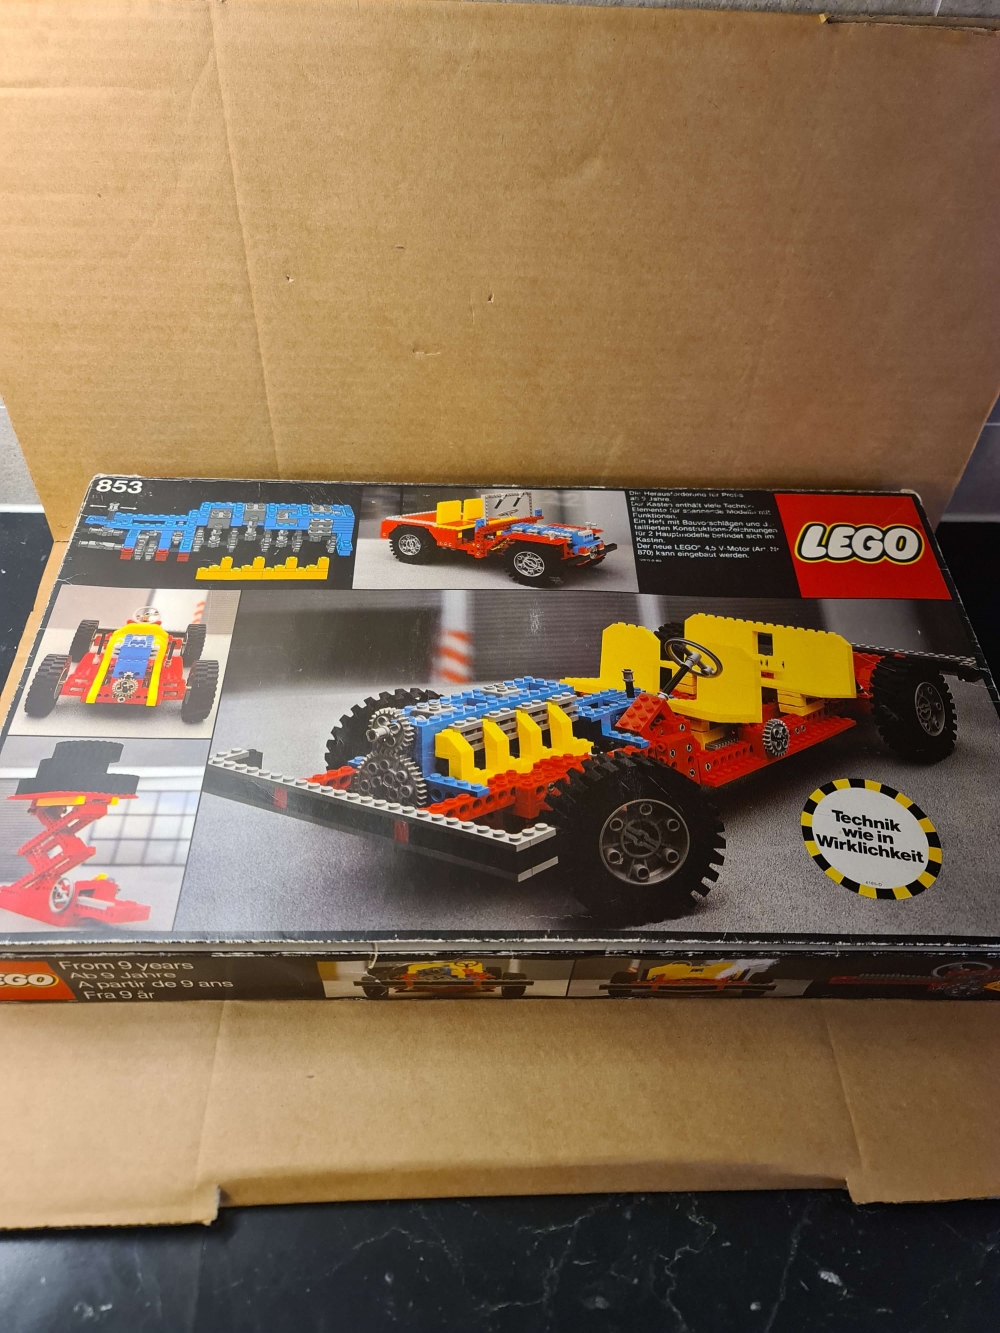 Sett 853 fra Lego Technic serien.
Veldig fint sett.
Helt komplett i eske med manual.
